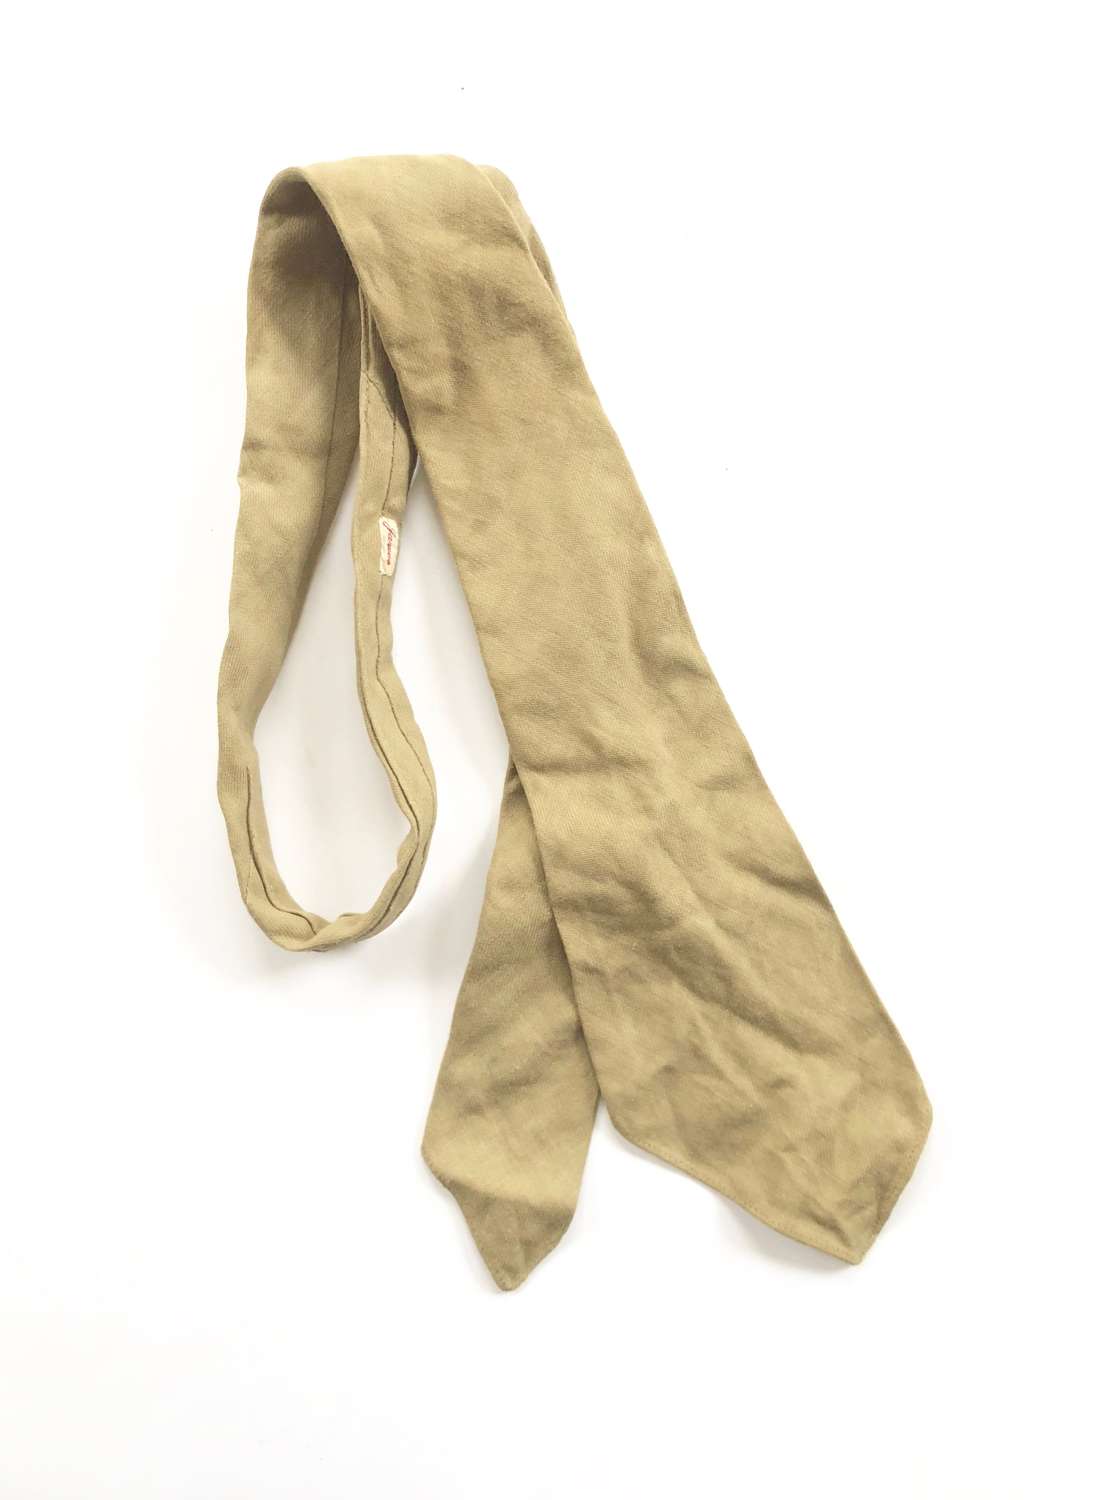 WW1 / WW2 British Army Pattern Officer’s Tie.